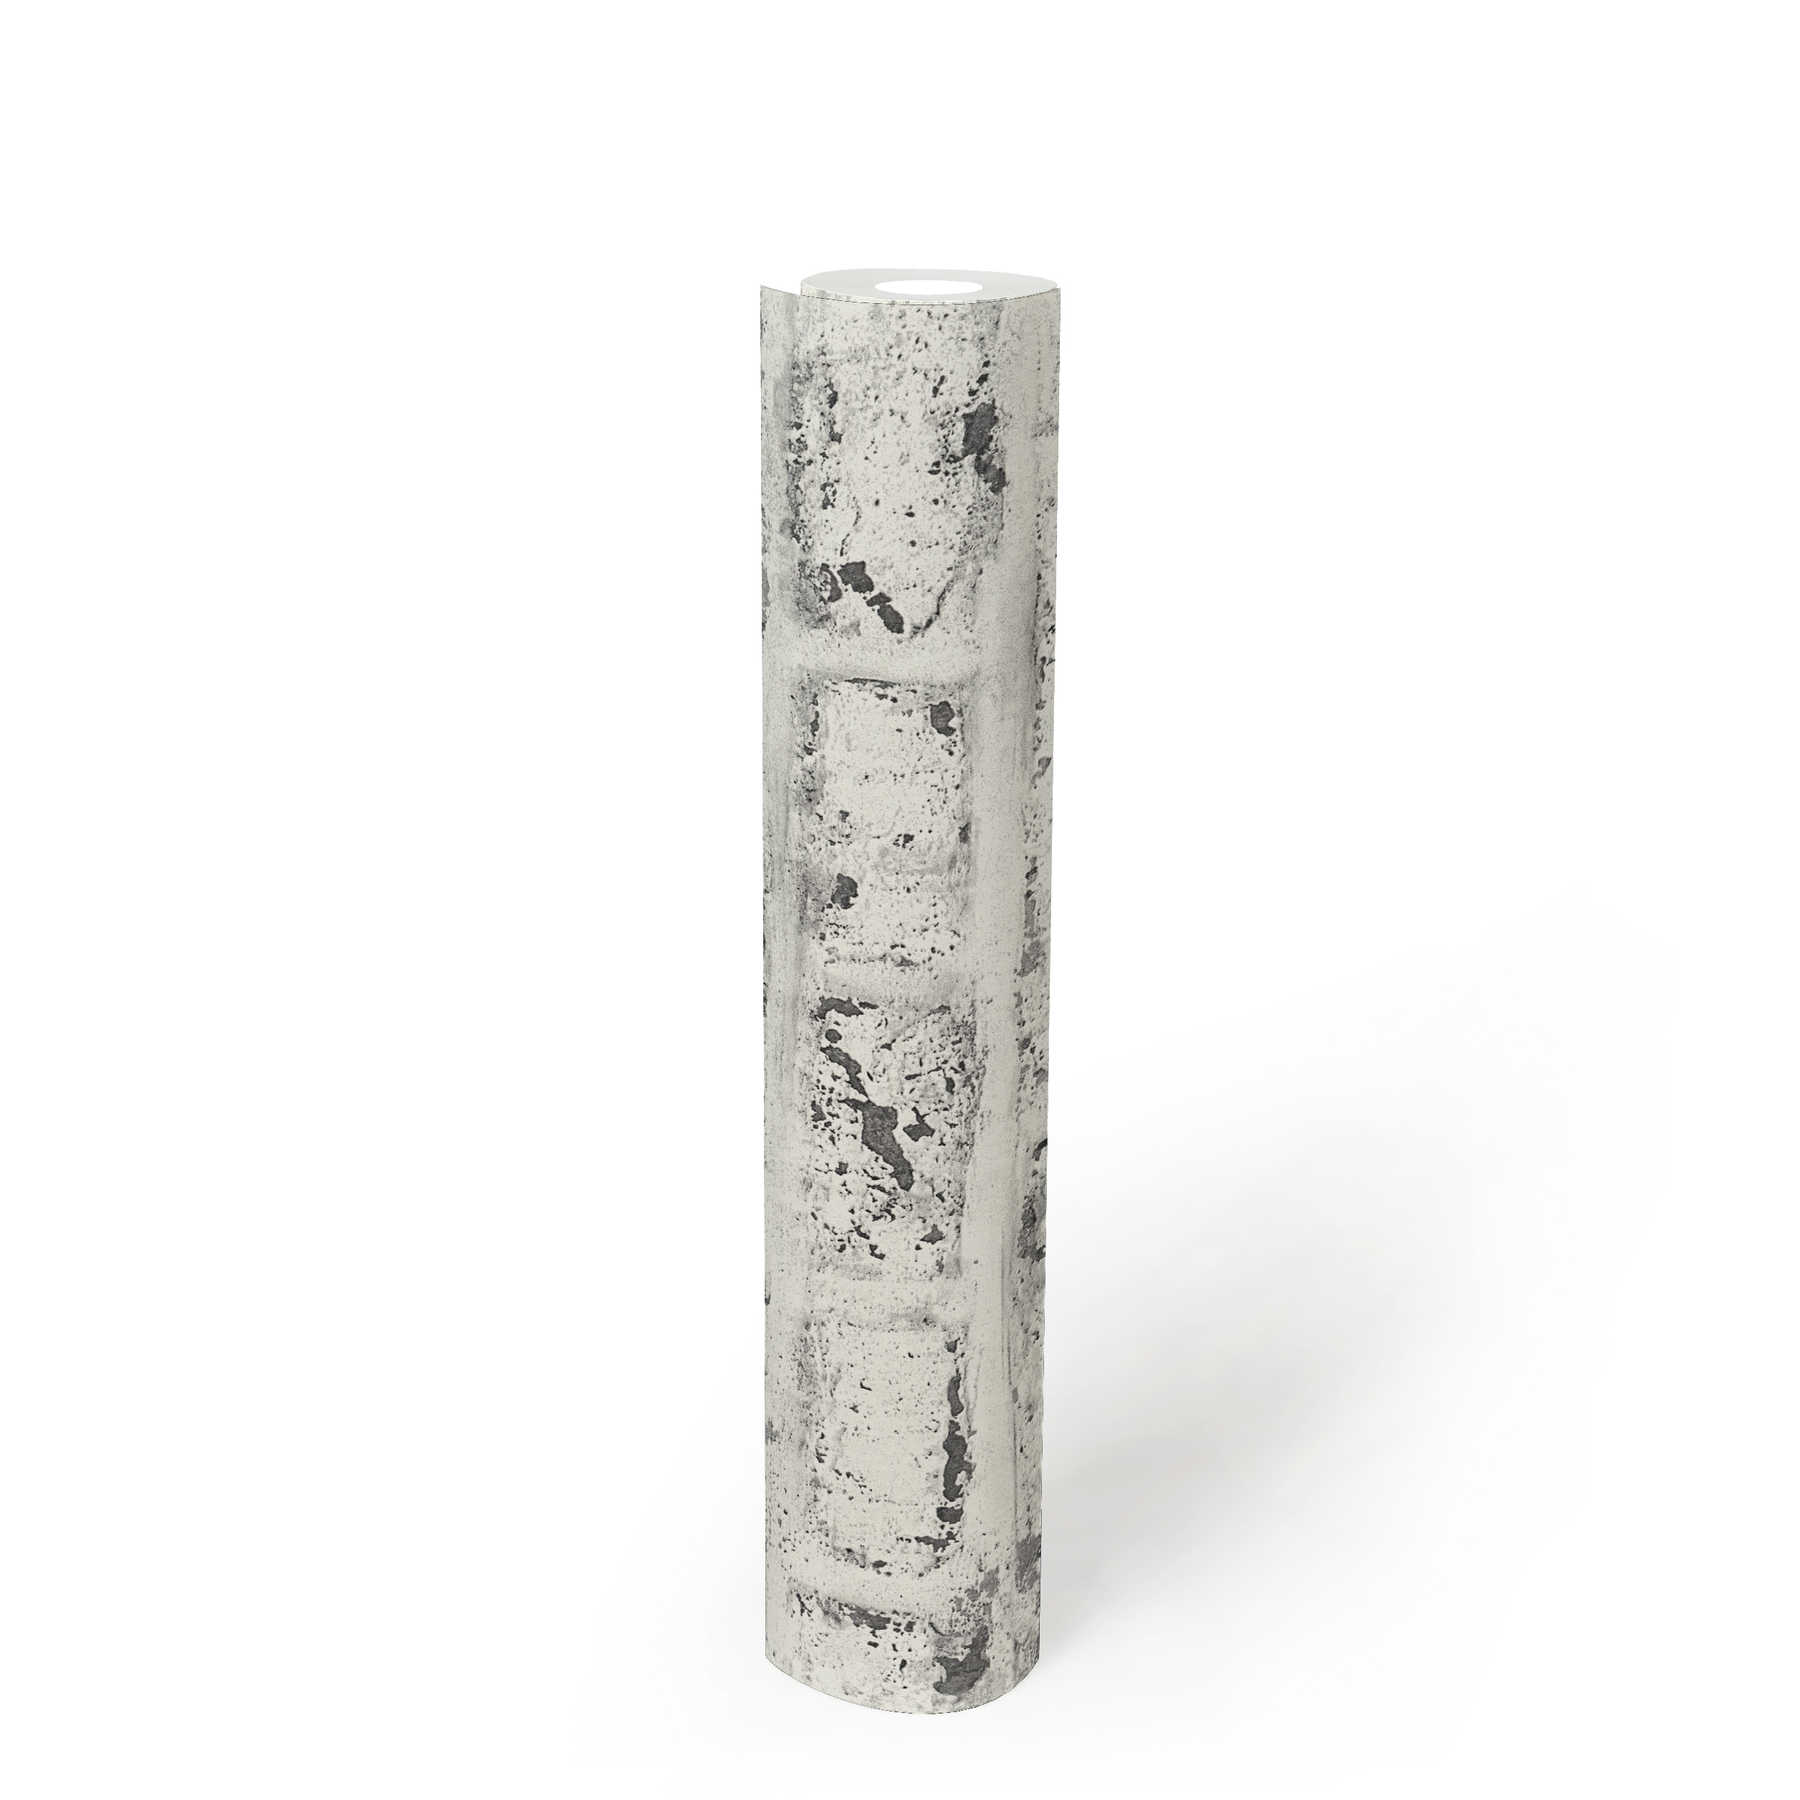             Carta da parati in pietra, muro di mattoni bianchi, stile industriale - bianco, grigio
        